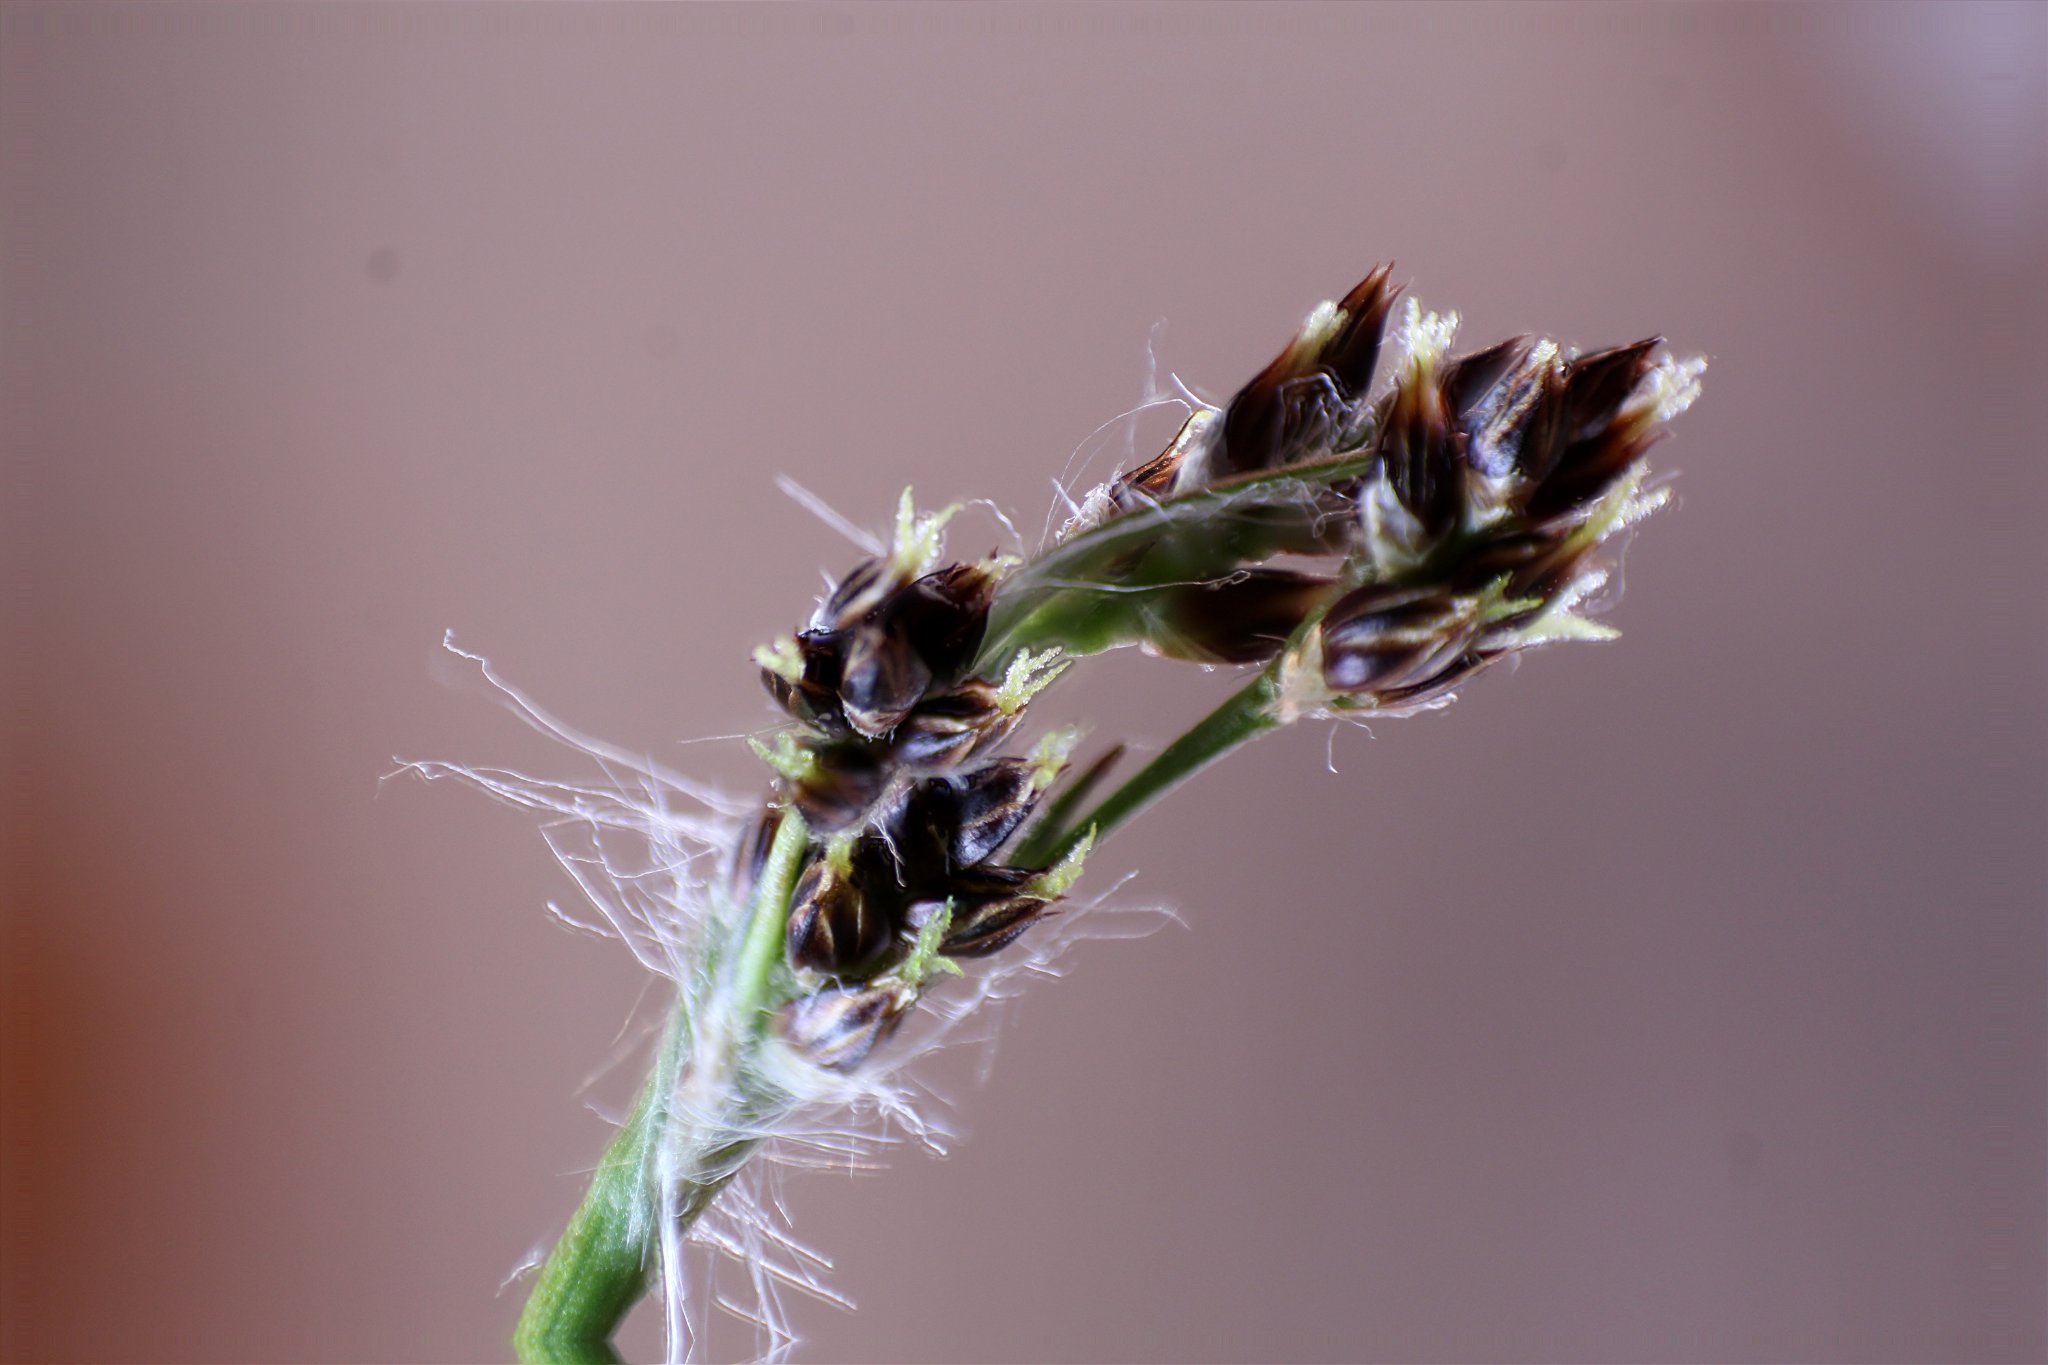 Carex - 55mm retourné - stack de 4 photos.JPG